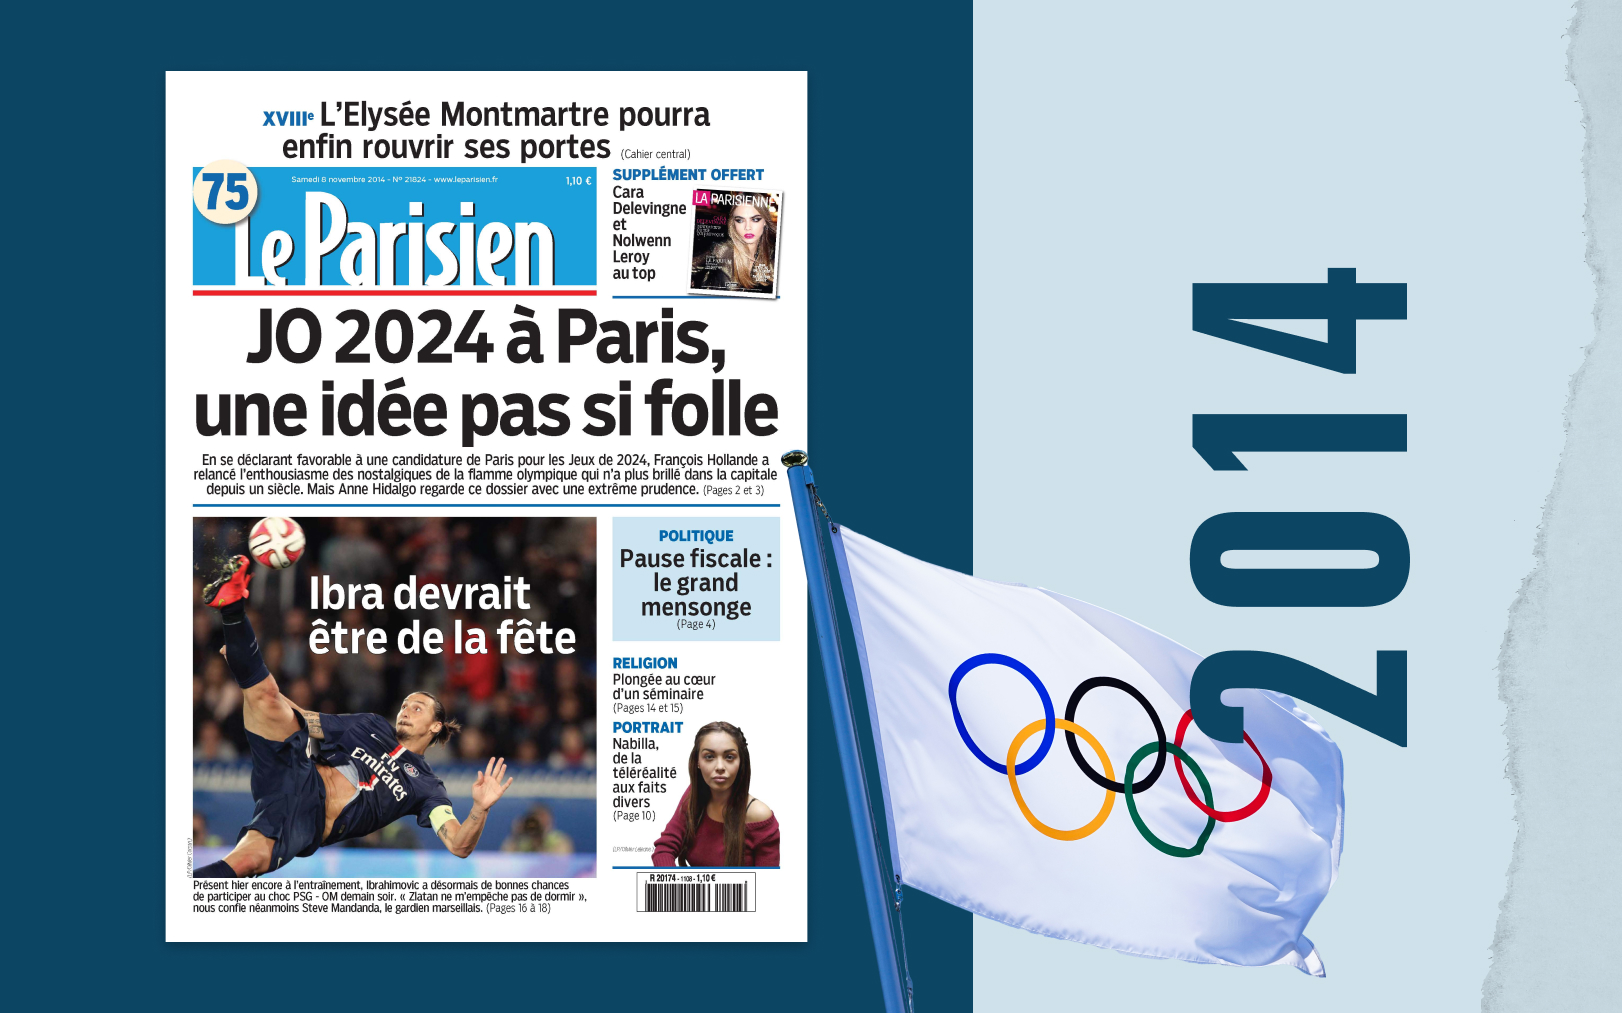 Le 8 novembre 2014, Le Parisien s'enthousiasme déjà : «JO 2024 à Paris, une idée pas si folle». Le Parisien - DA/Icon Sport